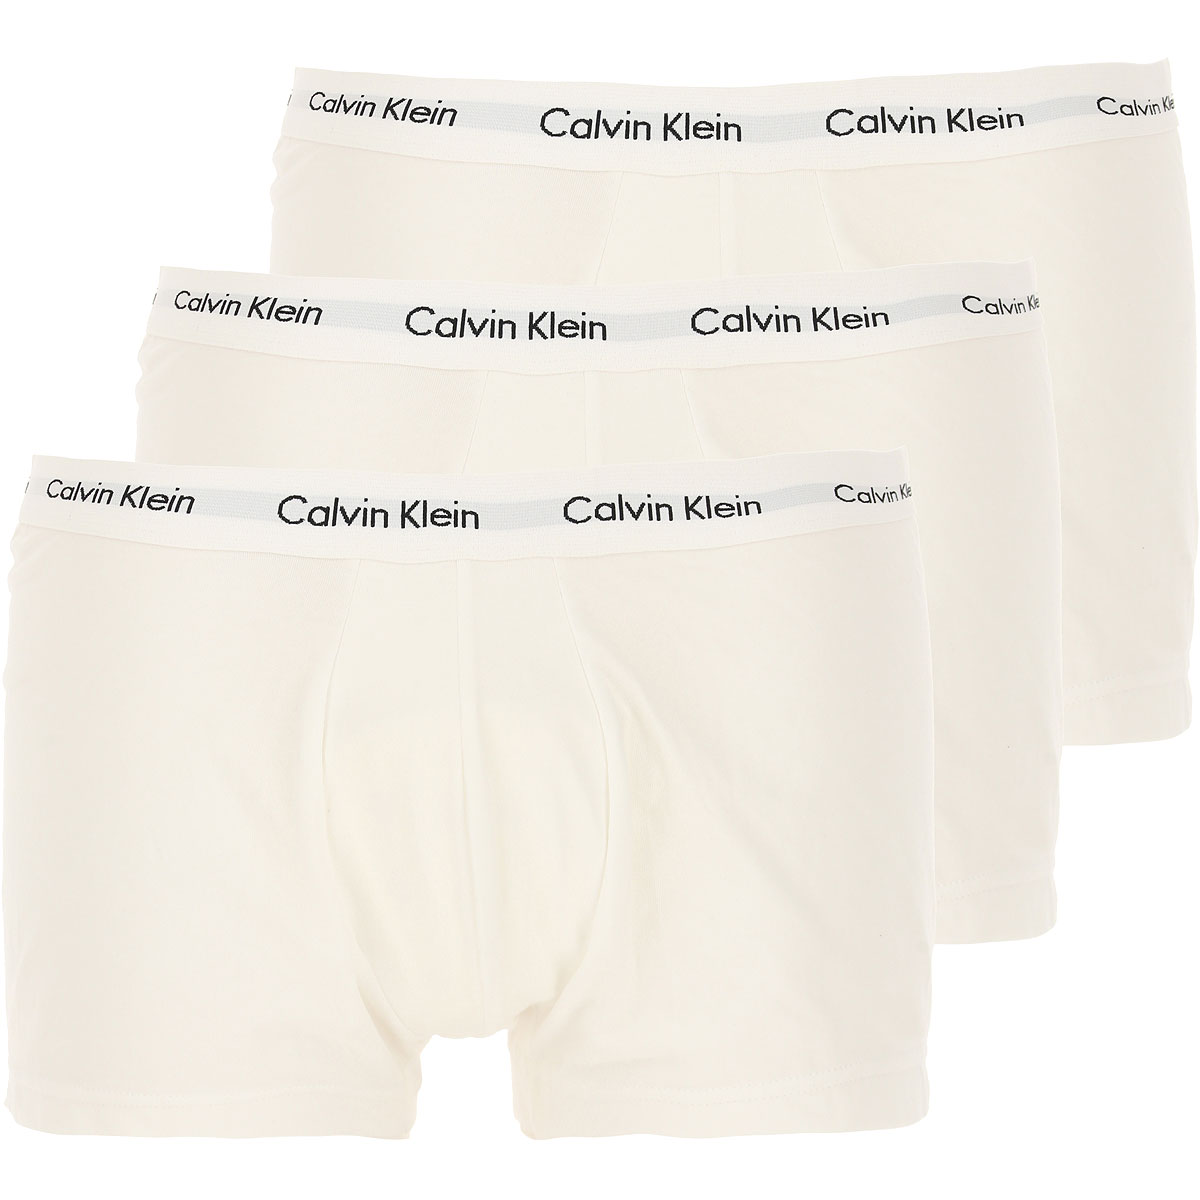 Calvin Klein Boxer Shorts für Herren, Unterhose, Short, Boxer Günstig im Sale, 3 Pack, Weiss, Baumwolle, 2017, L M S XL XS